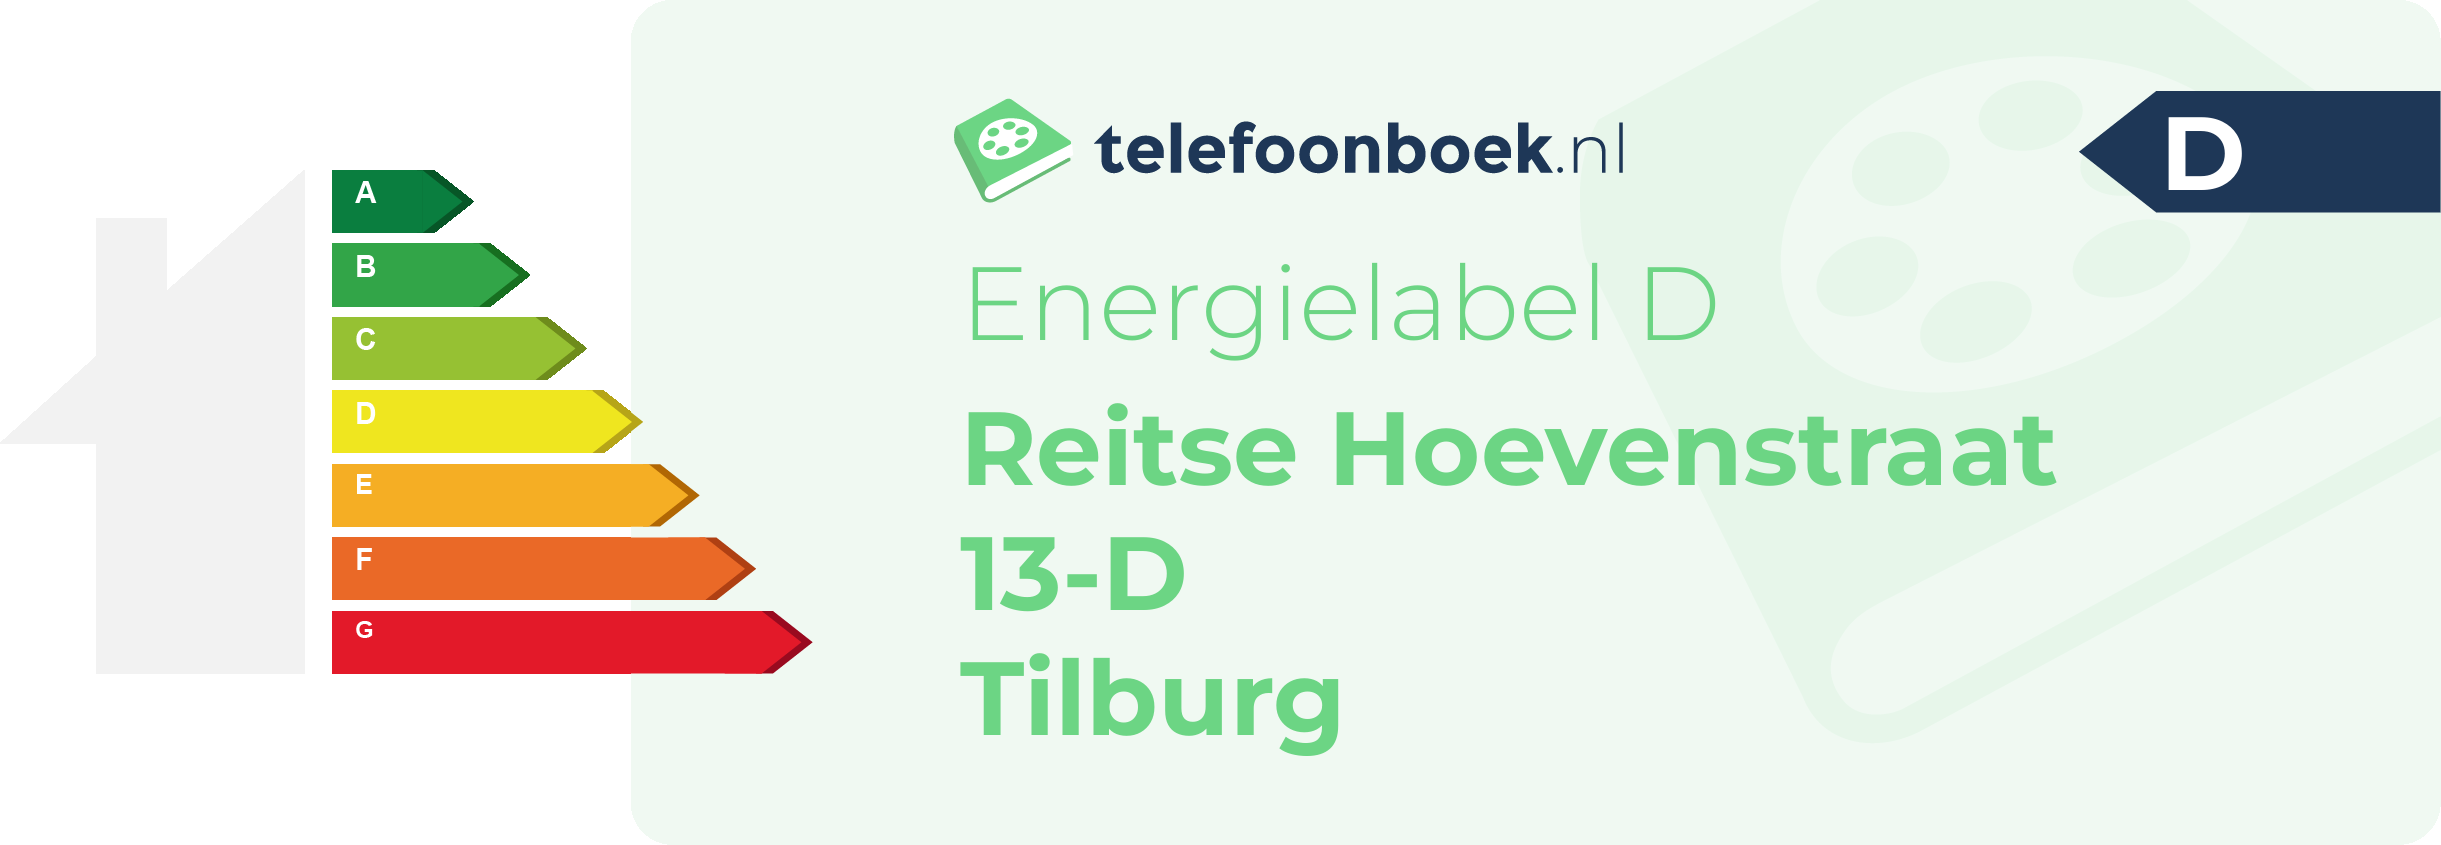 Energielabel Reitse Hoevenstraat 13-D Tilburg